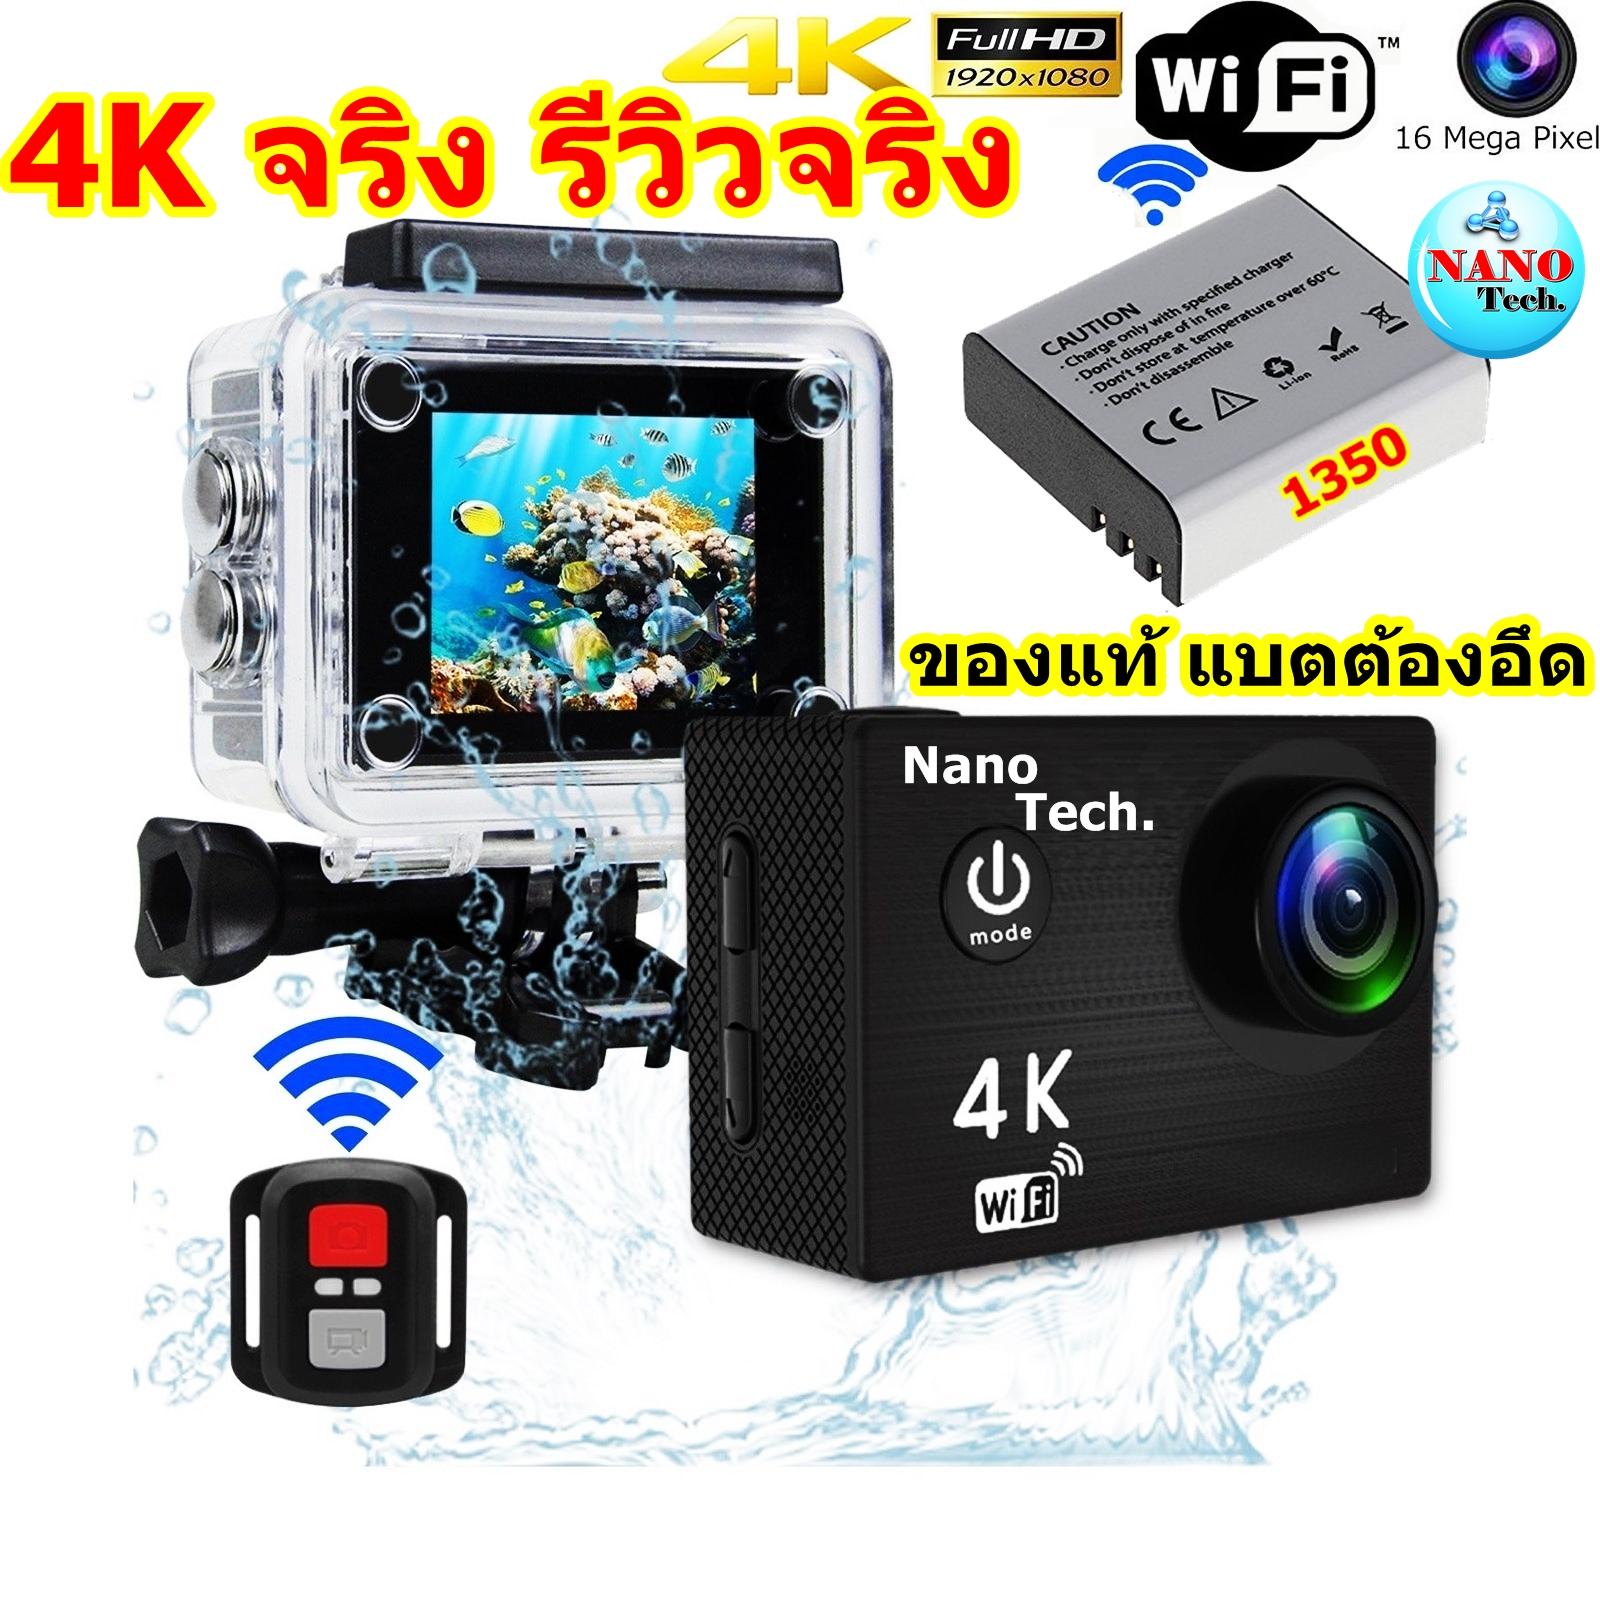 4K กล้องกันน้ำ ถ่ายใต้น้ำ พร้อมรีโมท Sport camera Action camera 4K Ultra HD waterproof WIFI FREE Remote